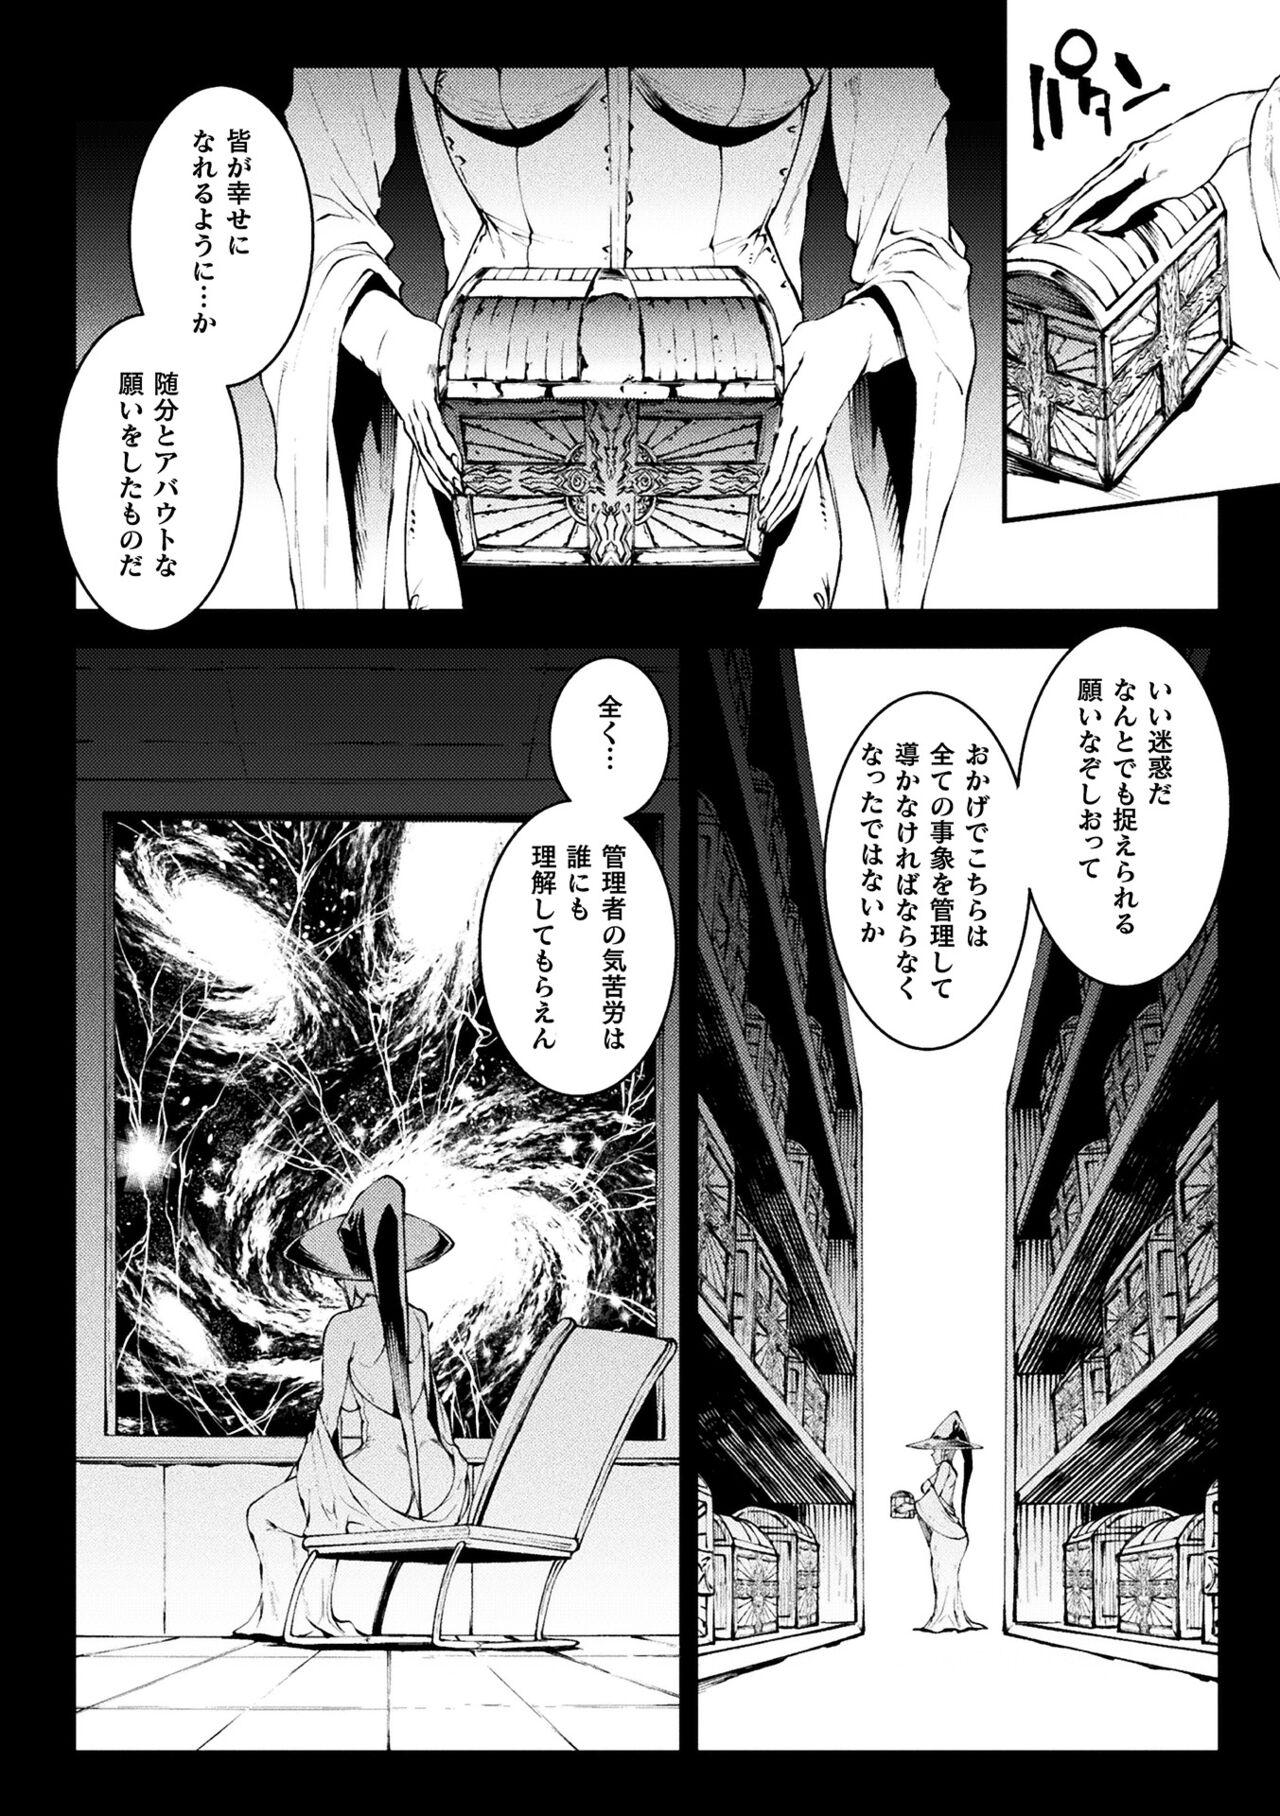 [Erect Sawaru] Raikou Shinki Igis Magia III -PANDRA saga 3rd ignition- 4 [Digital] 277